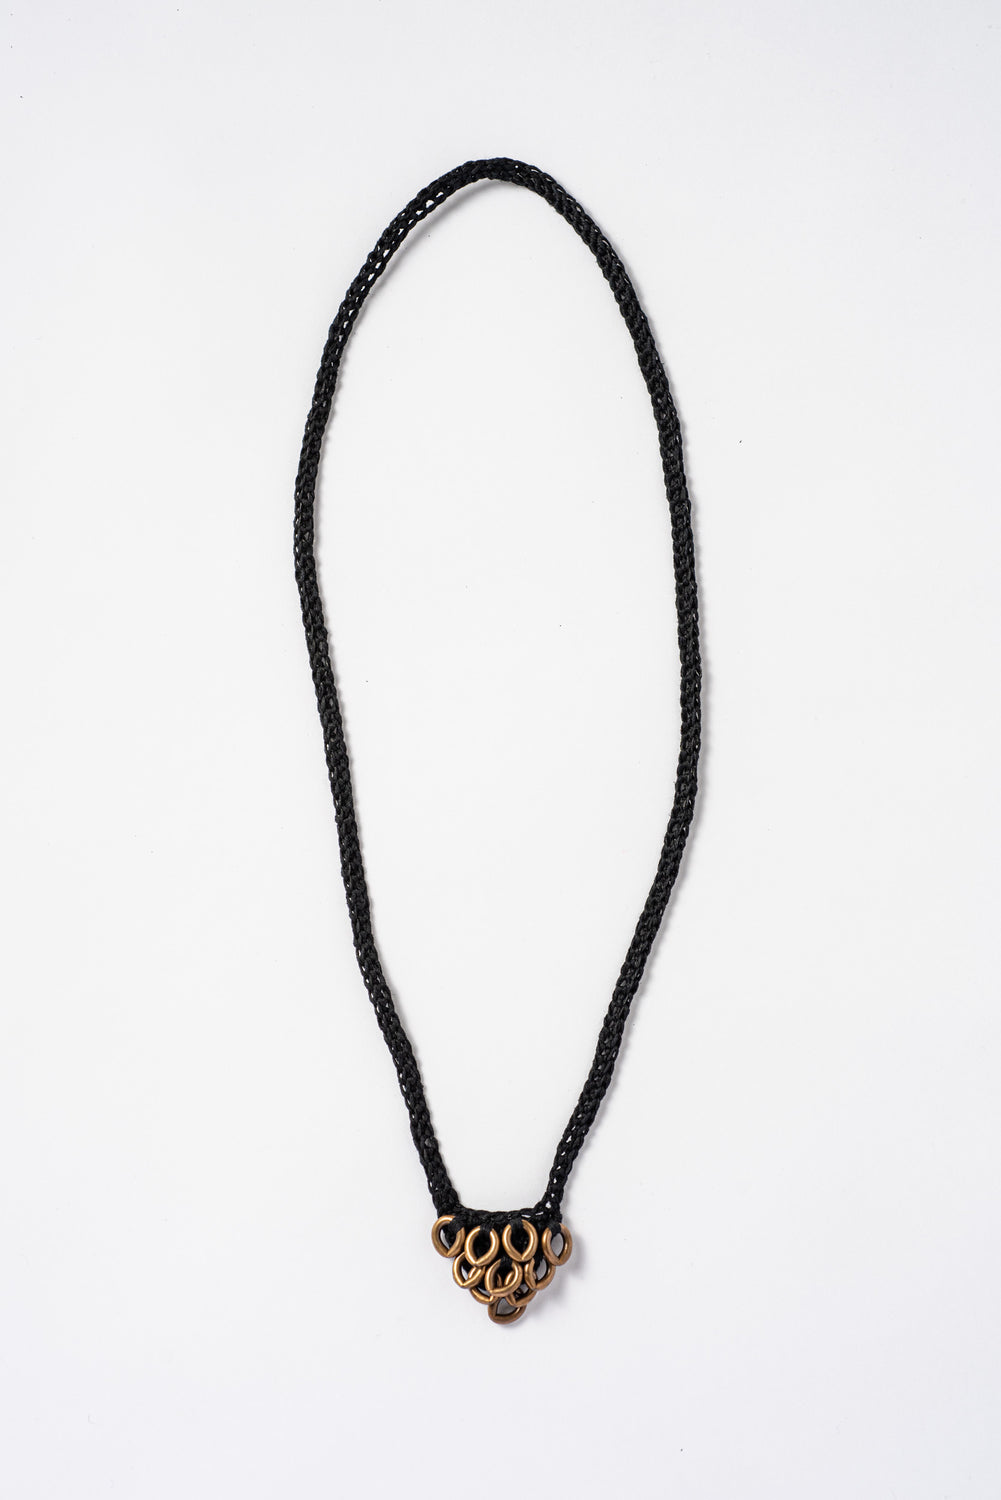 Petit Artichoke Necklace Black